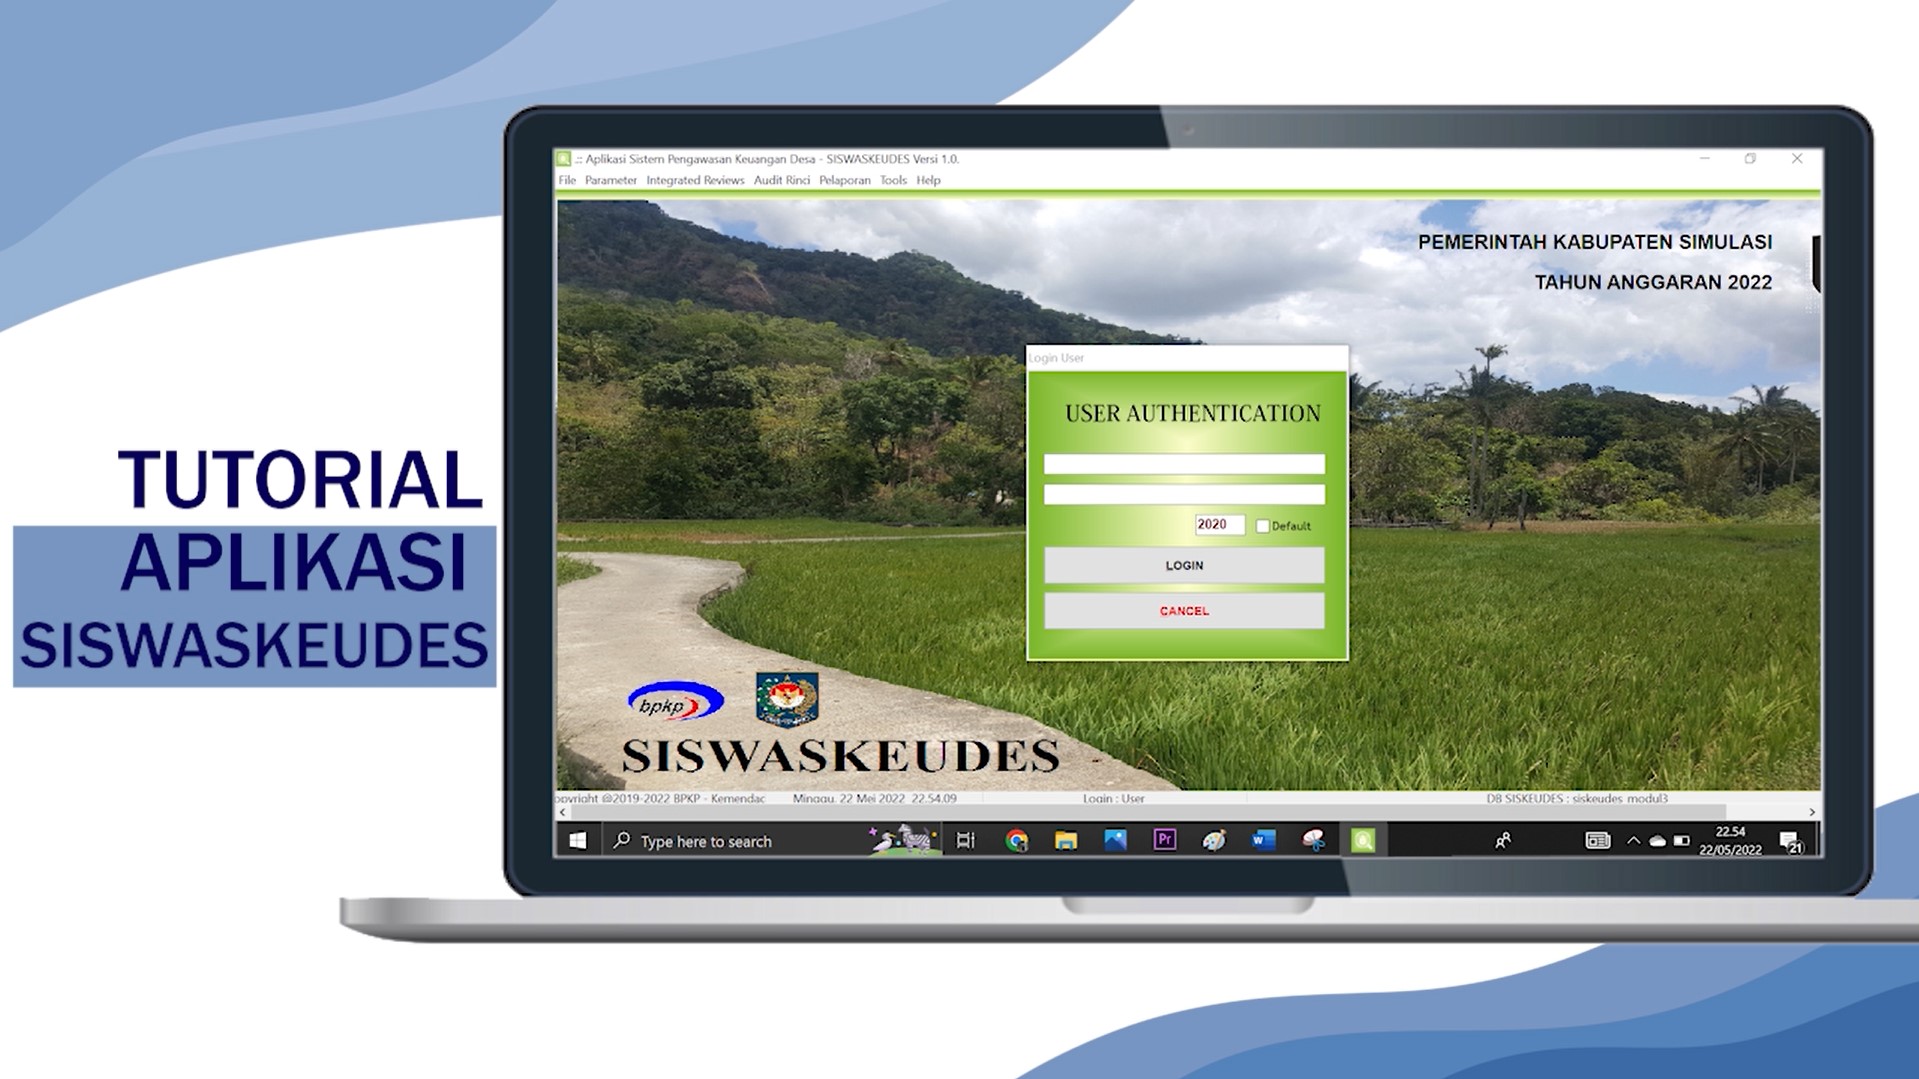 Pengoperasian Aplikasi Siswaskeudes dalam Pengawasan atas Pengelolaan Keuangan Desa